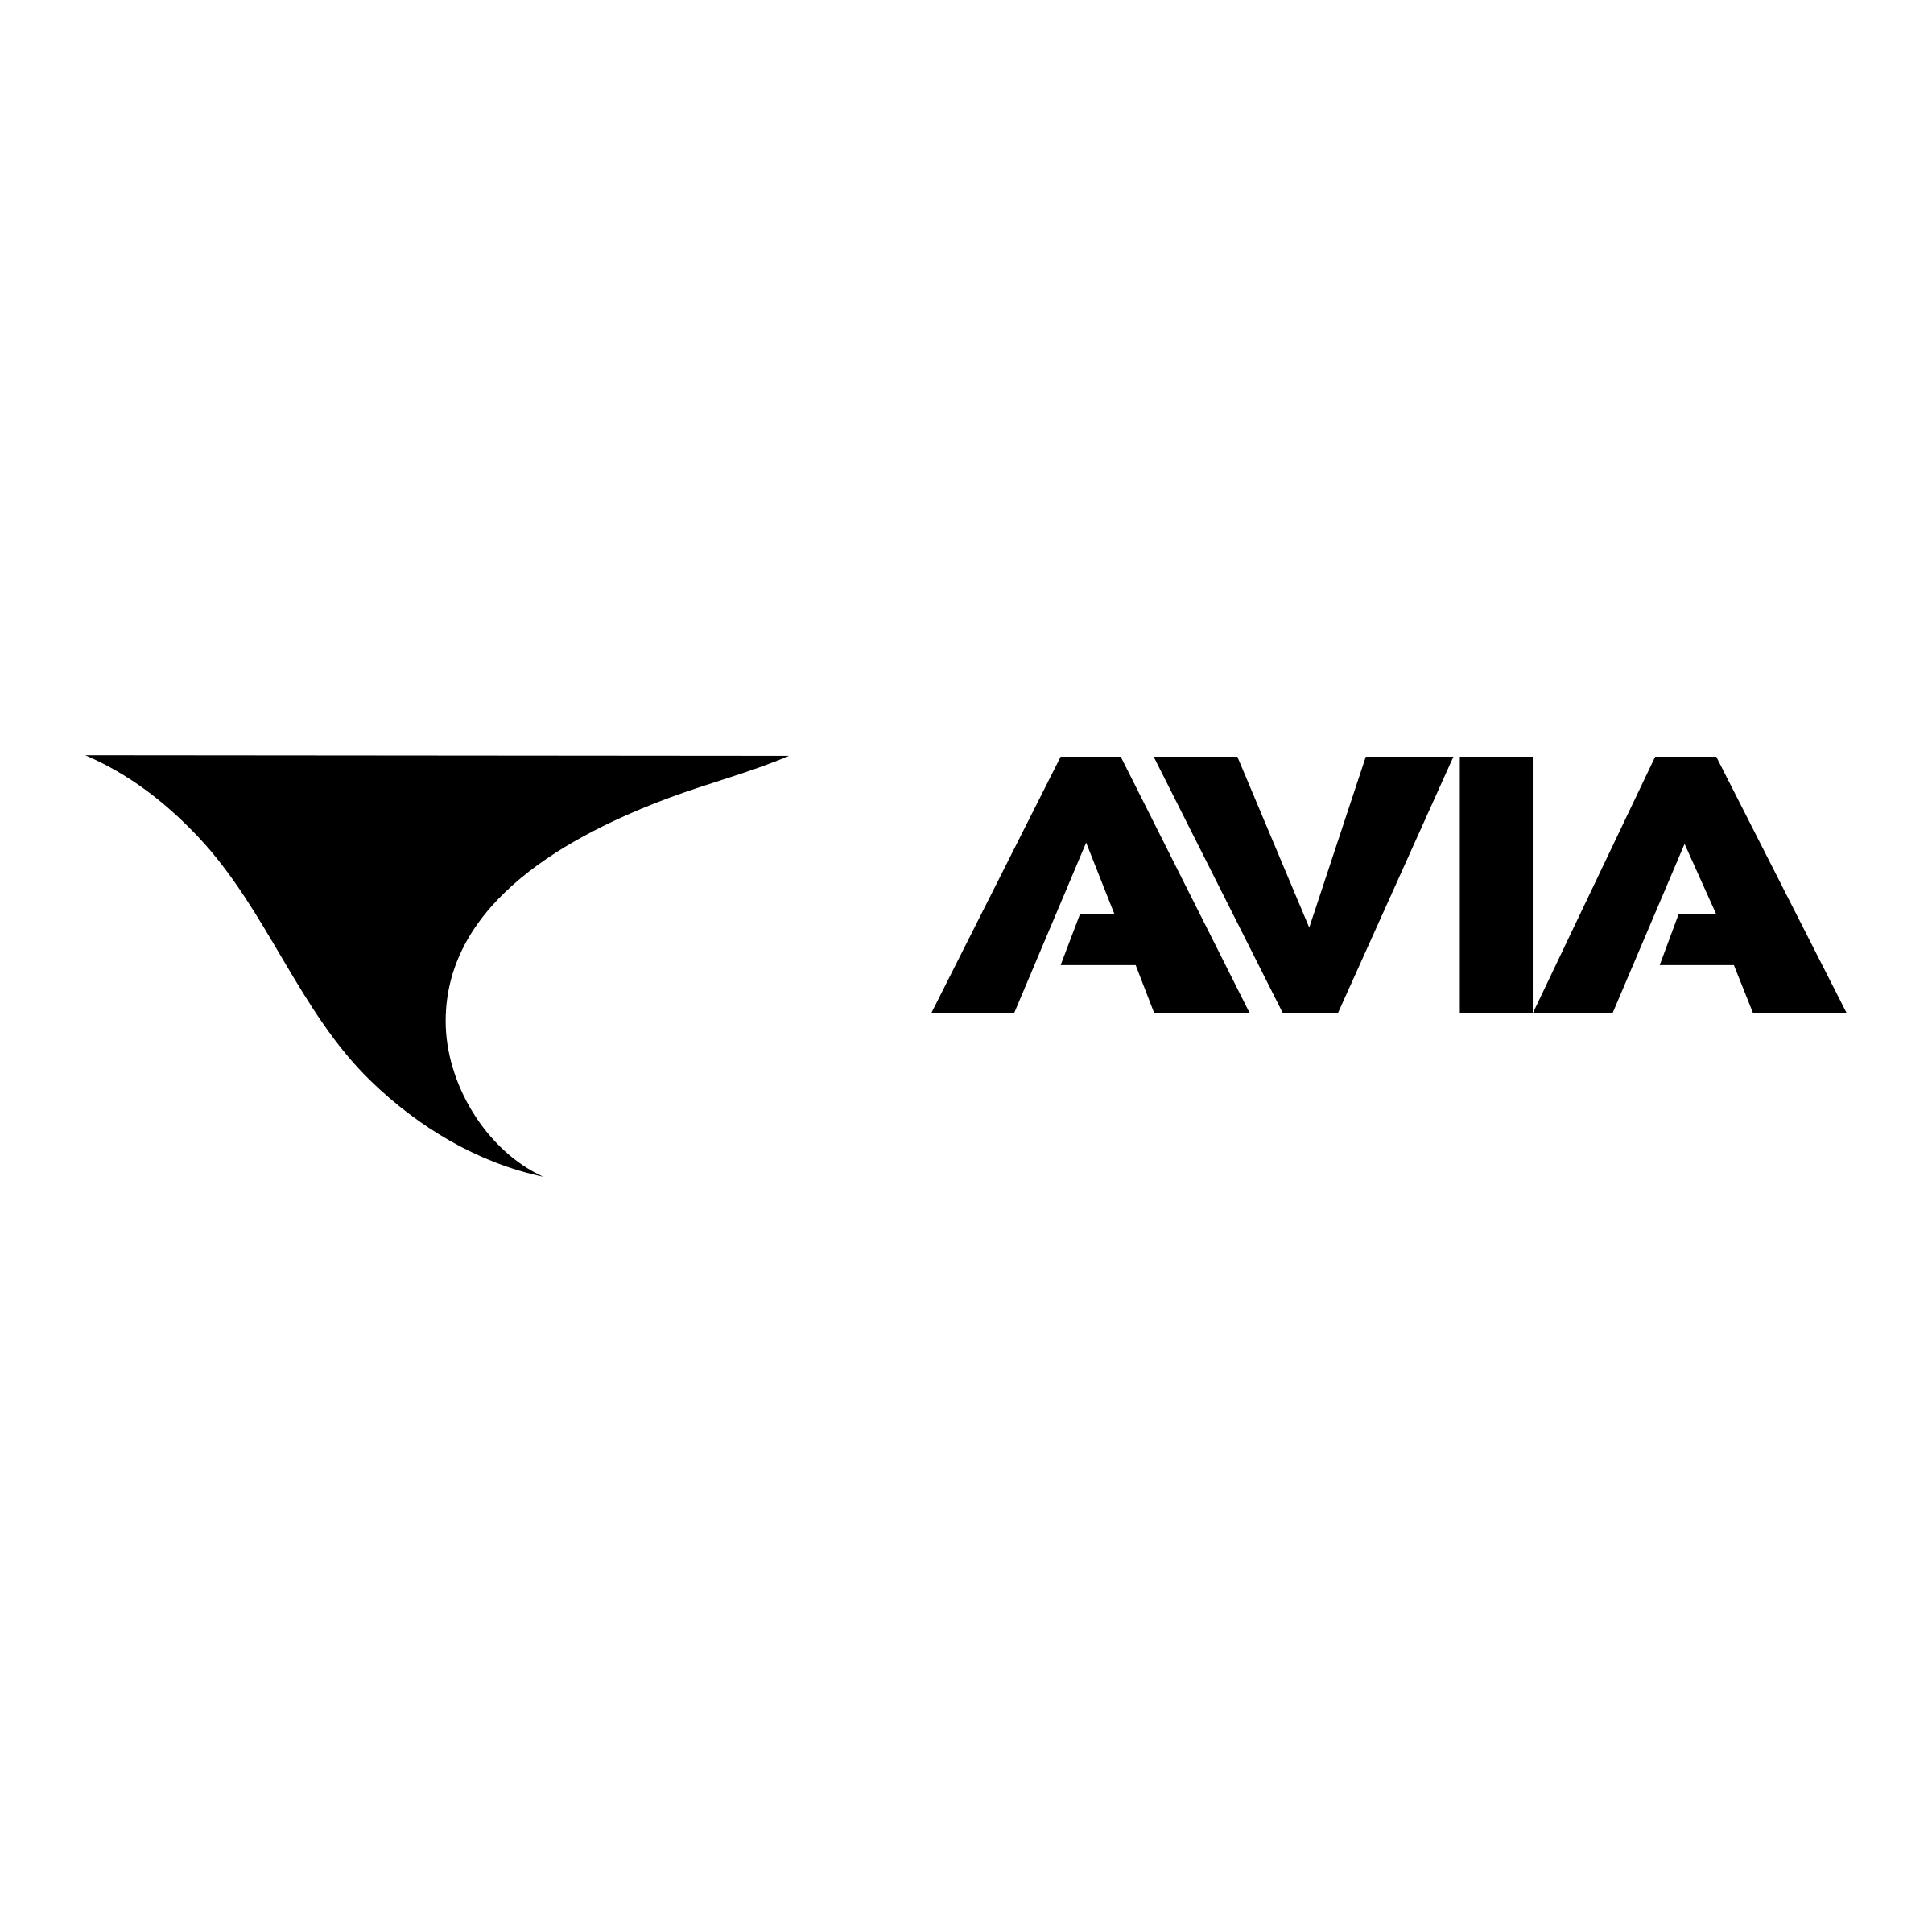 Avia Logo - Avia Logo PNG Transparent & SVG Vector - Freebie Supply